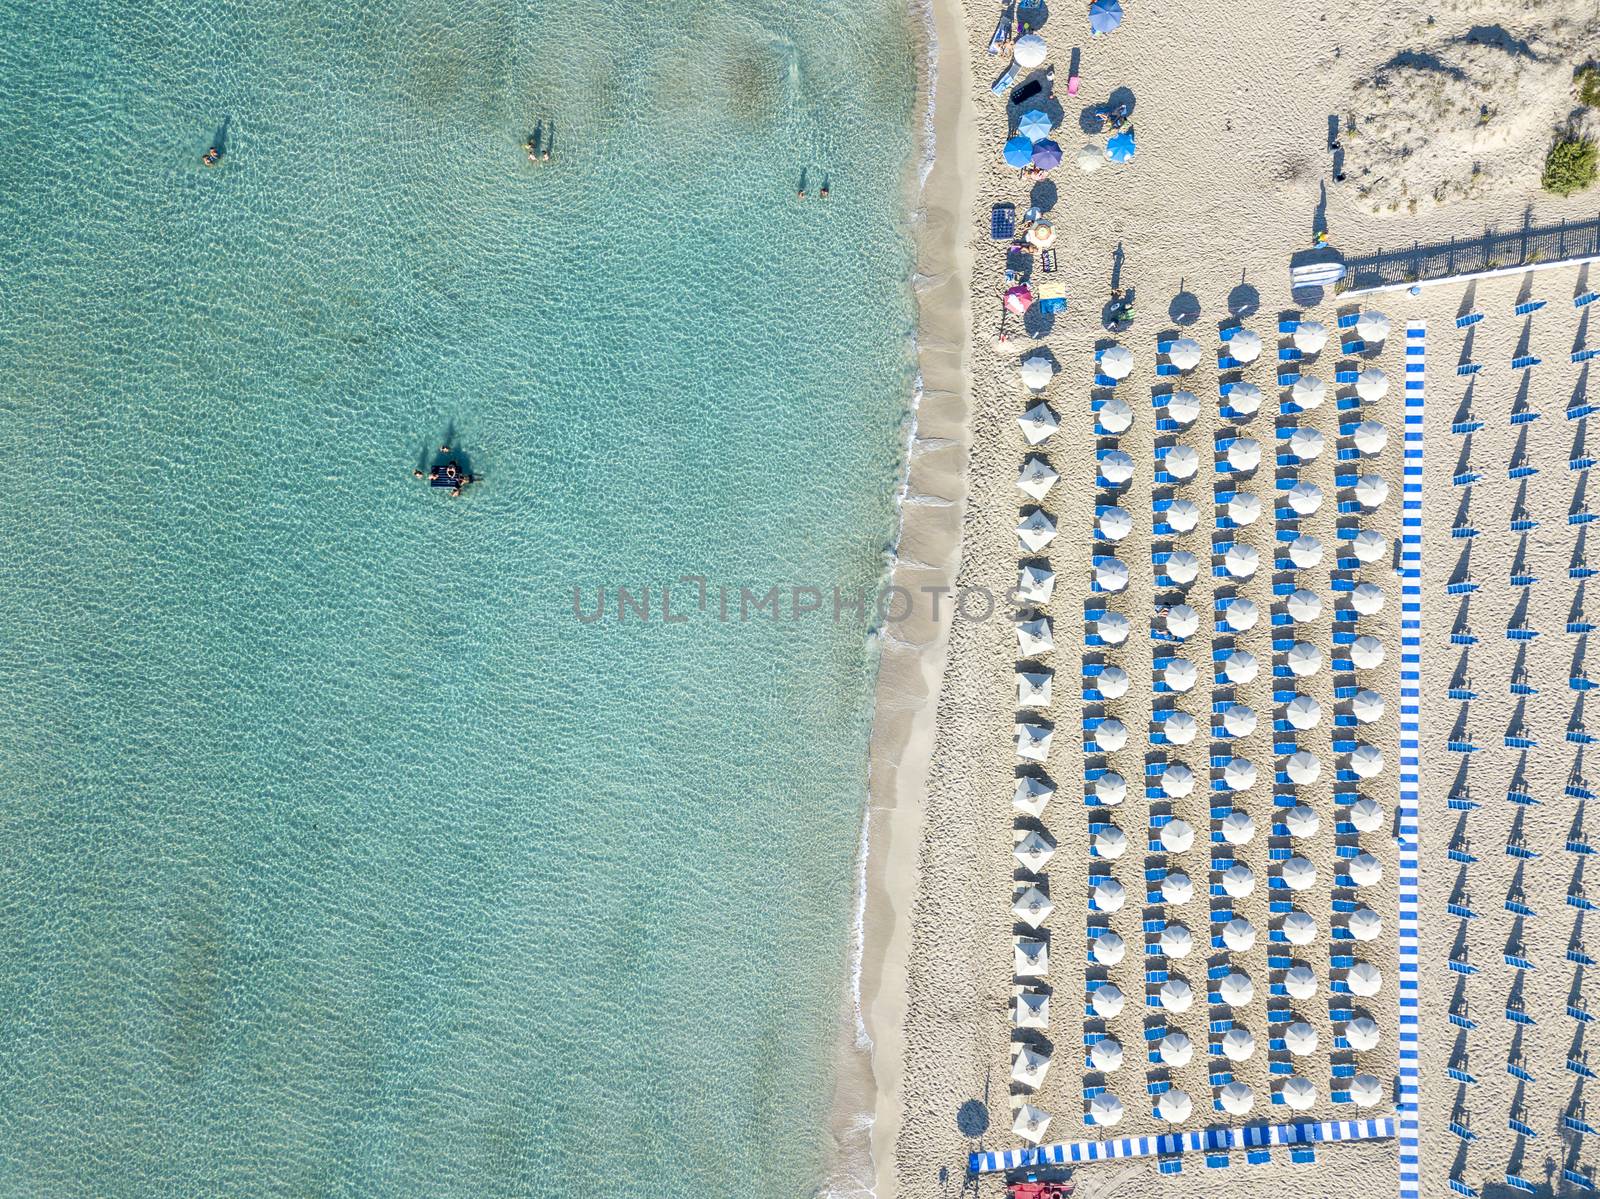 Puglia, Taranto coastline, view from a drone.